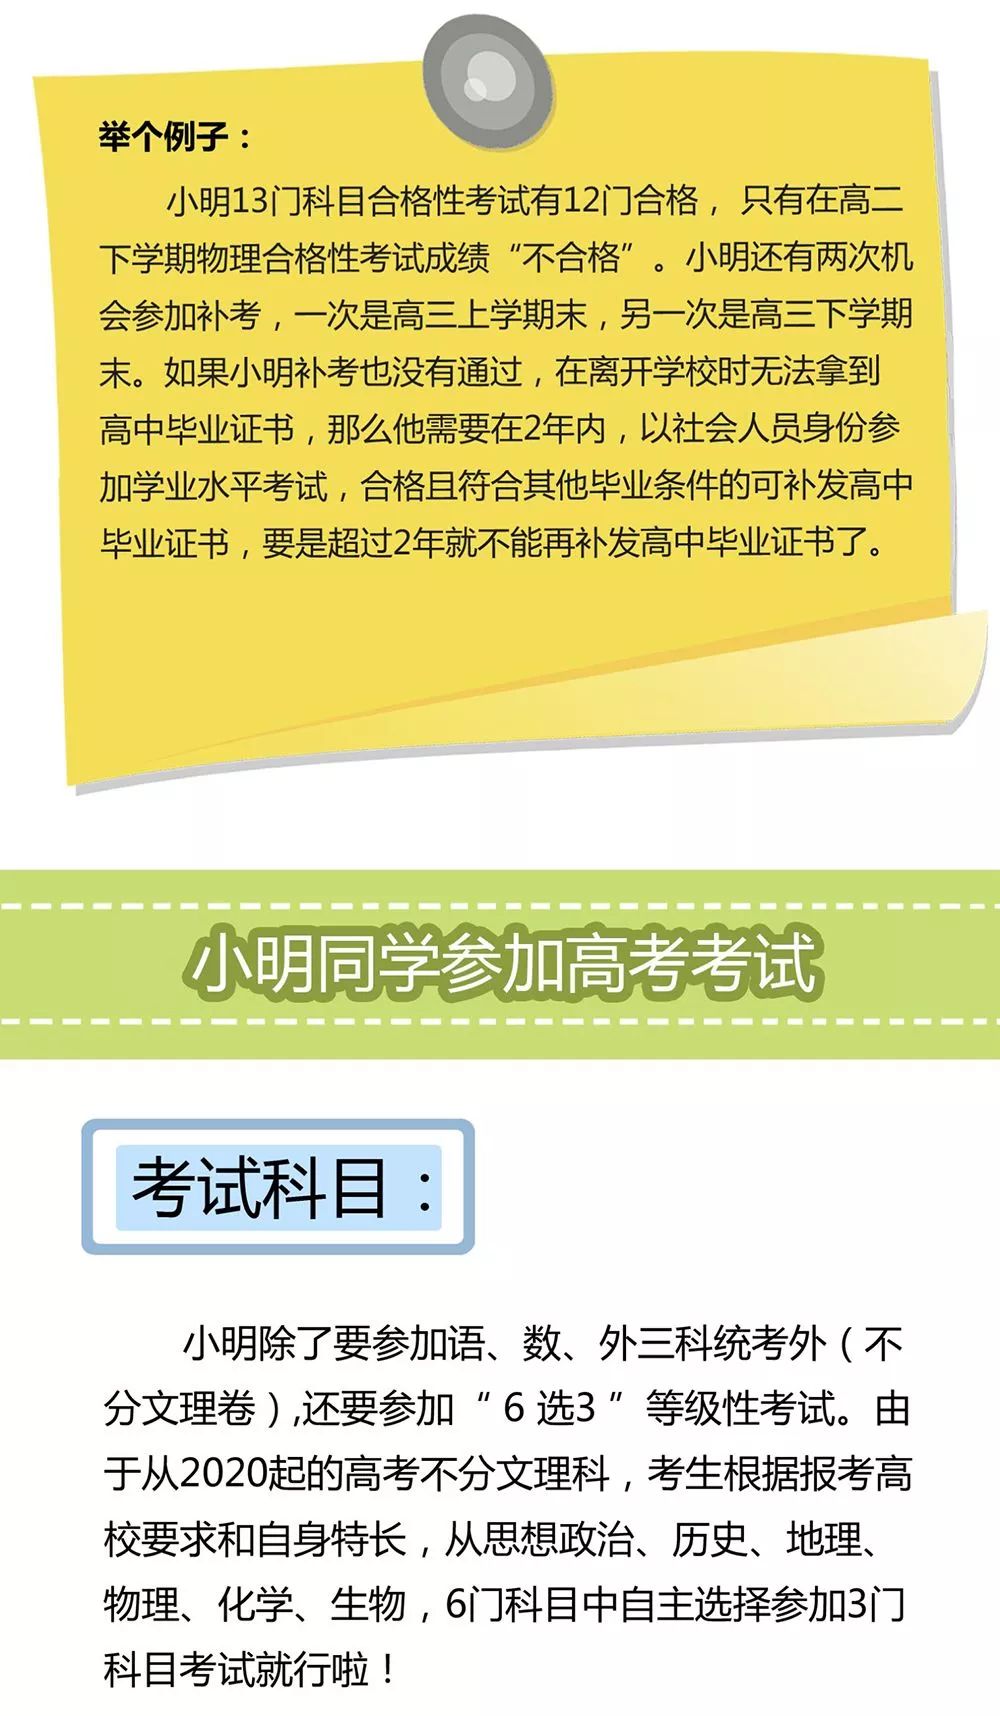 北京新高考方案公布! 这将是大多数省份改革方向! 影响每个高中生